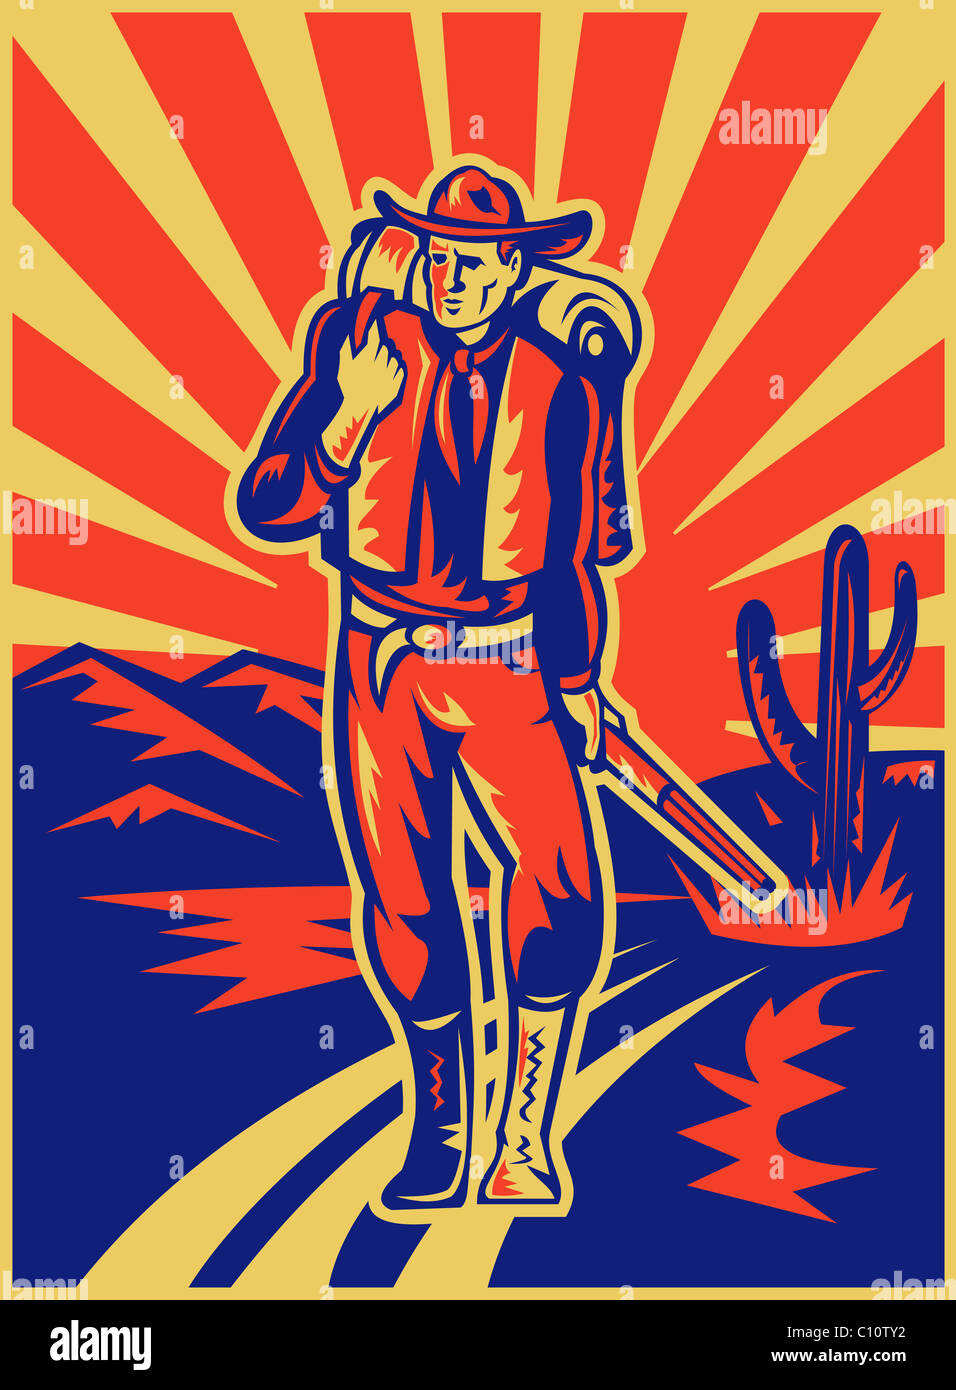 Ilustración de estilo retro de un vaquero llevar mochila y fusil caminando con las montañas del desierto y cactus en segundo plano. Foto de stock